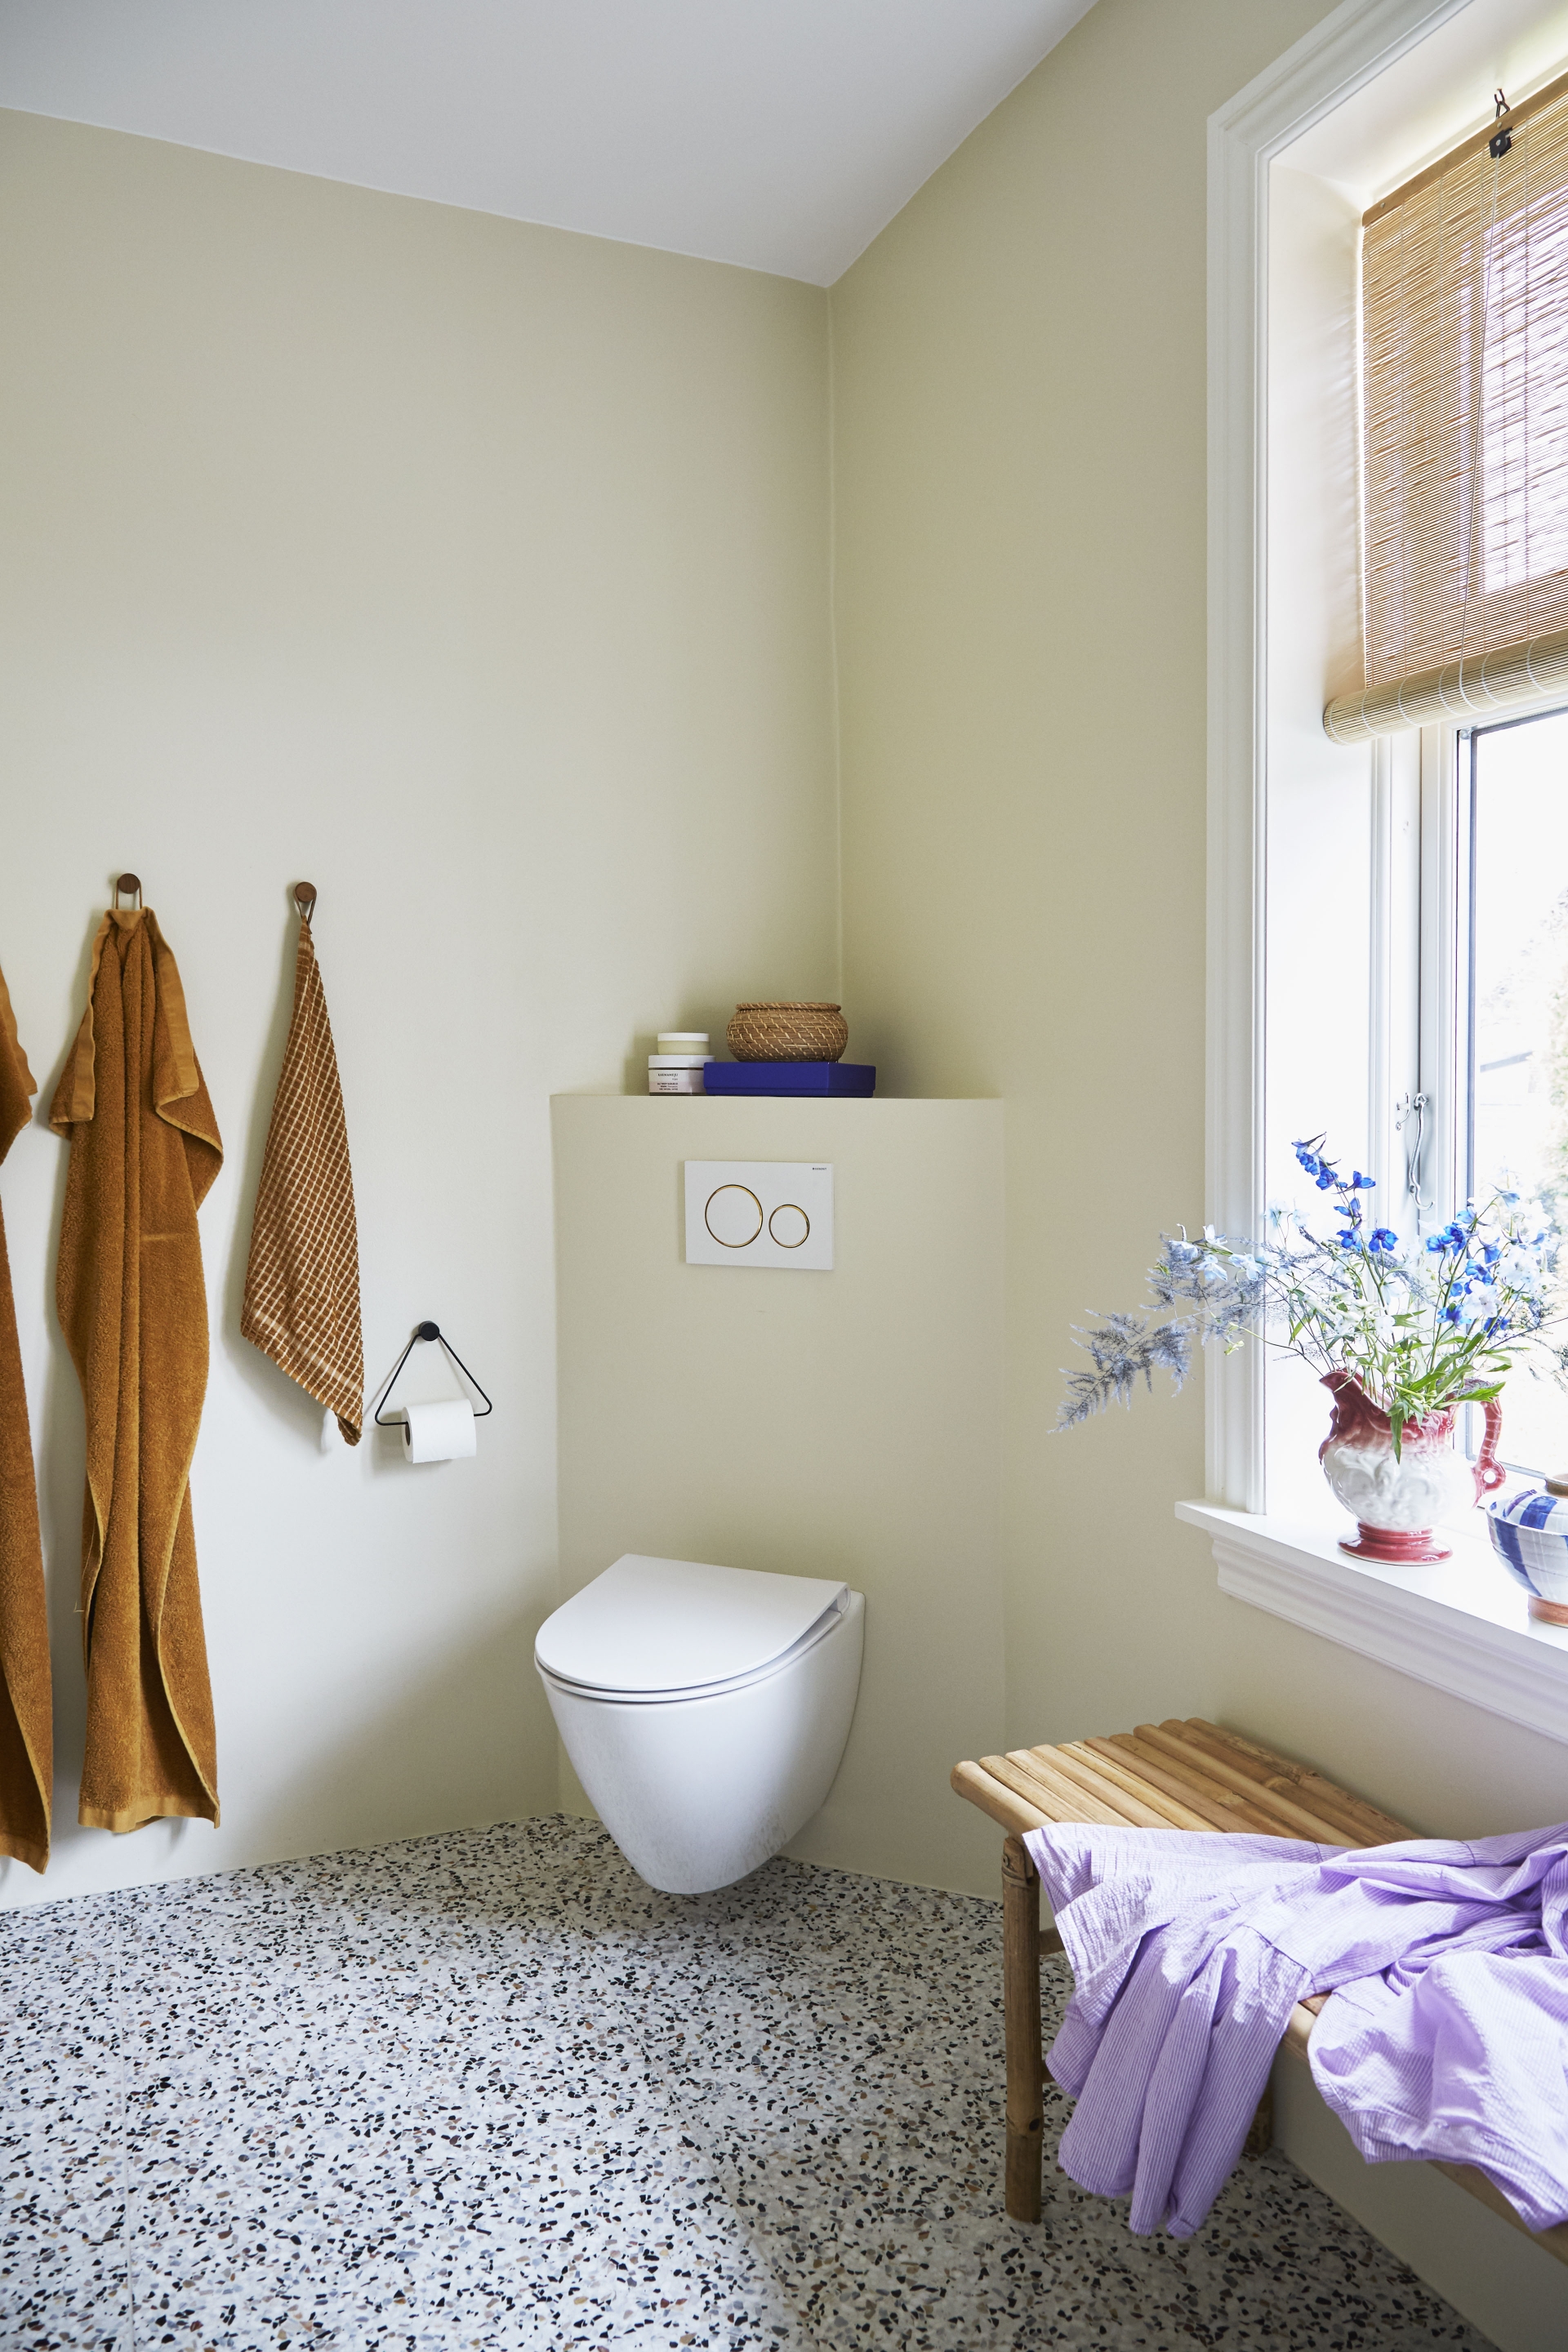 Nhà vệ sinh thiết lập đơn giản chỉ với một bồn toilet gắn tường nhỏ gọn lắp đặt ngay vị trí góc của 2 cạnh tường để tối ưu hóa không gian.